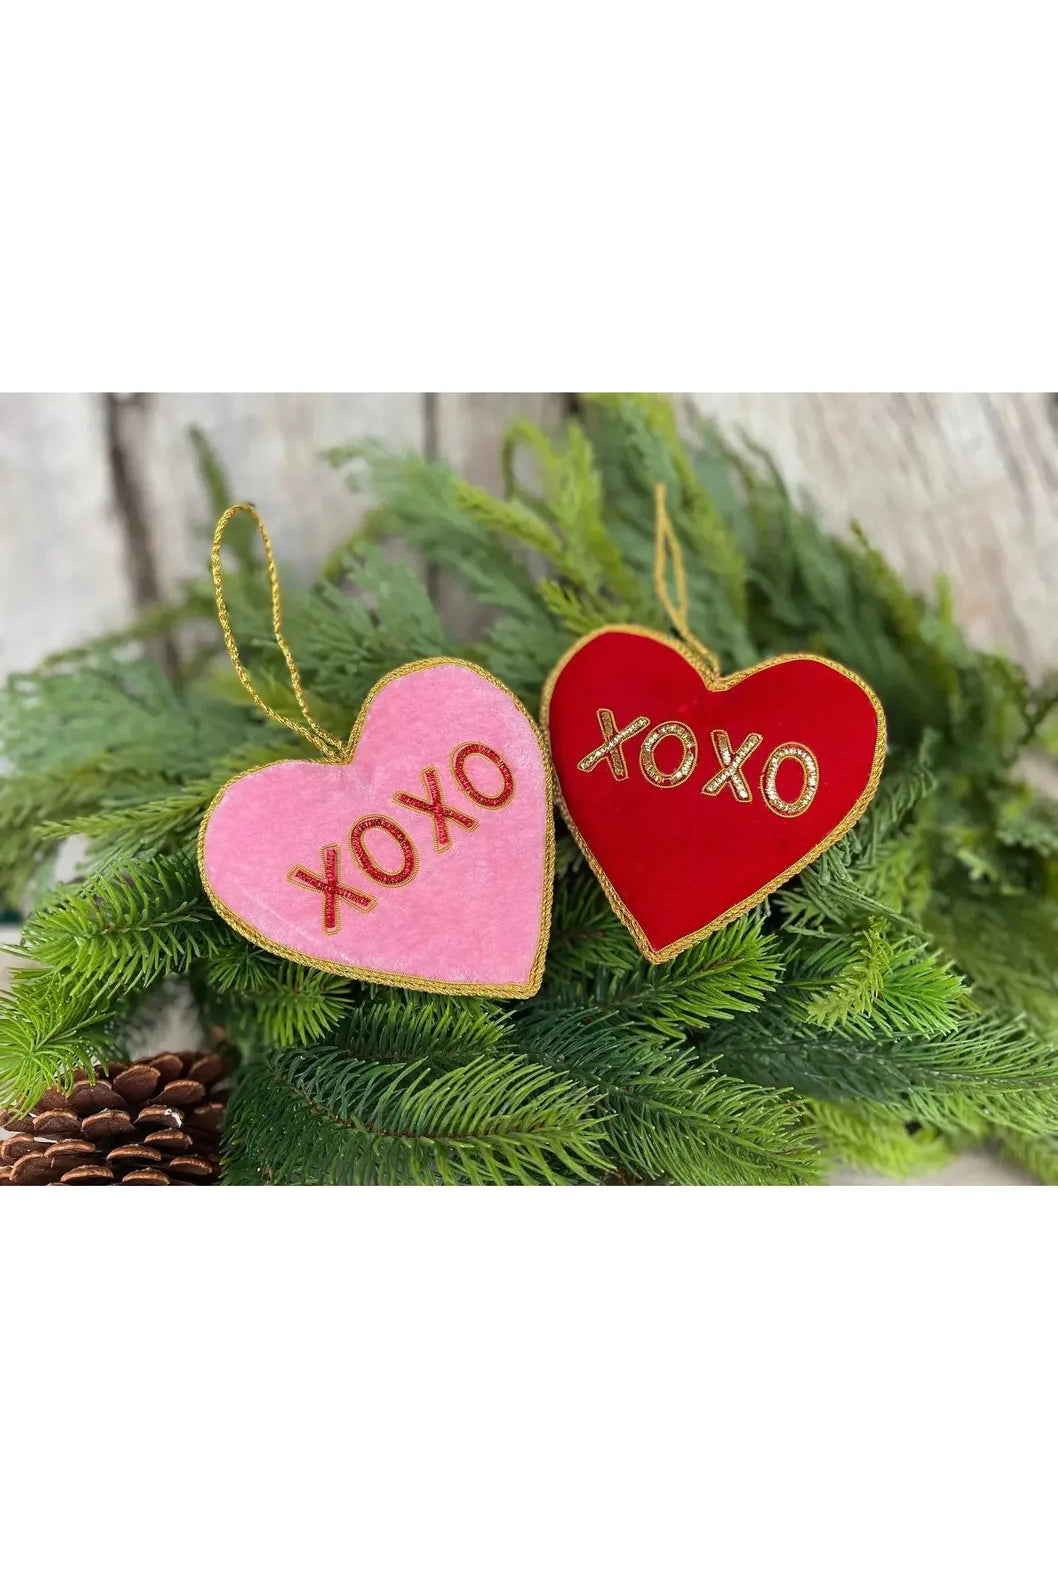 Shop For 4" Velvet Embroidered Hearts: XOXO (2 Asst) MTX71533